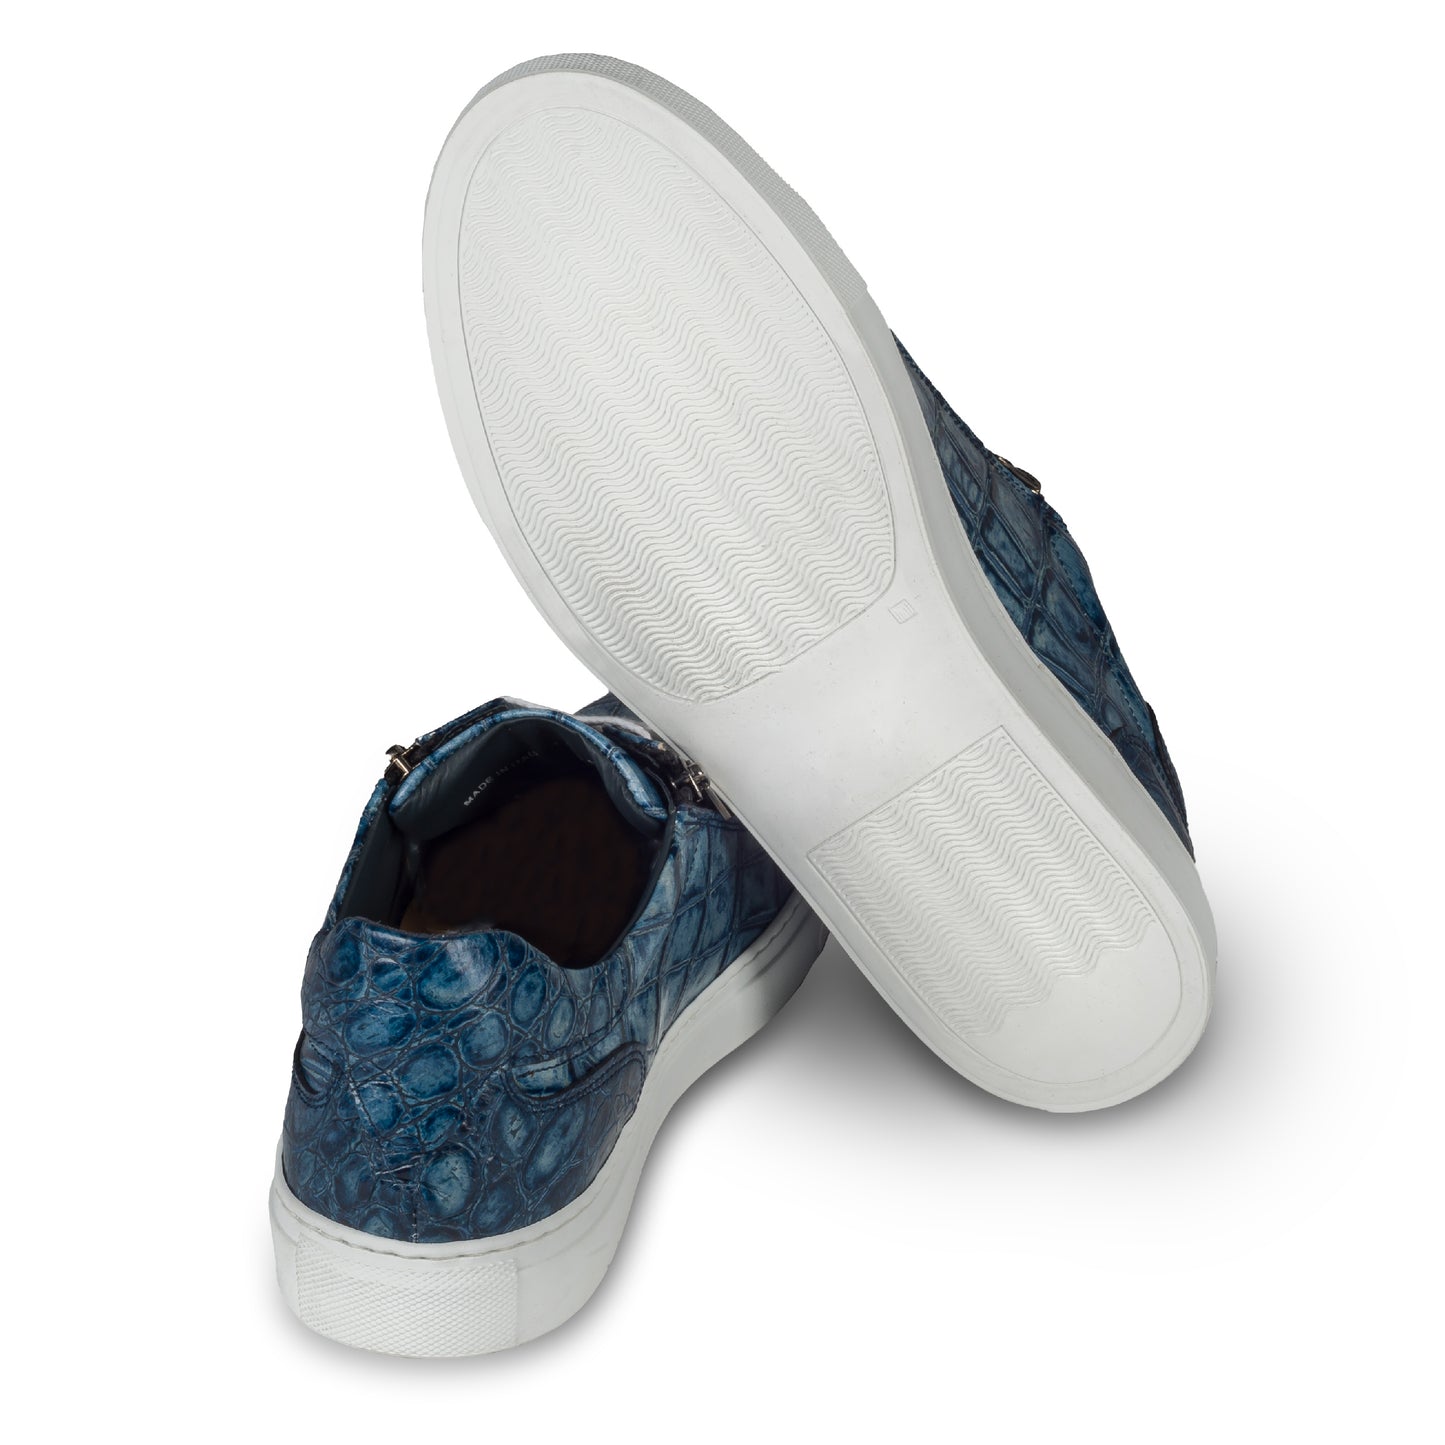 Lorenzi Italienische Herren Kalbsleder Sneaker in blau mit Kroko-Optik und weißer Sohle. Handgefertigt. Ansicht der Ferse und Sohlenunterseite.